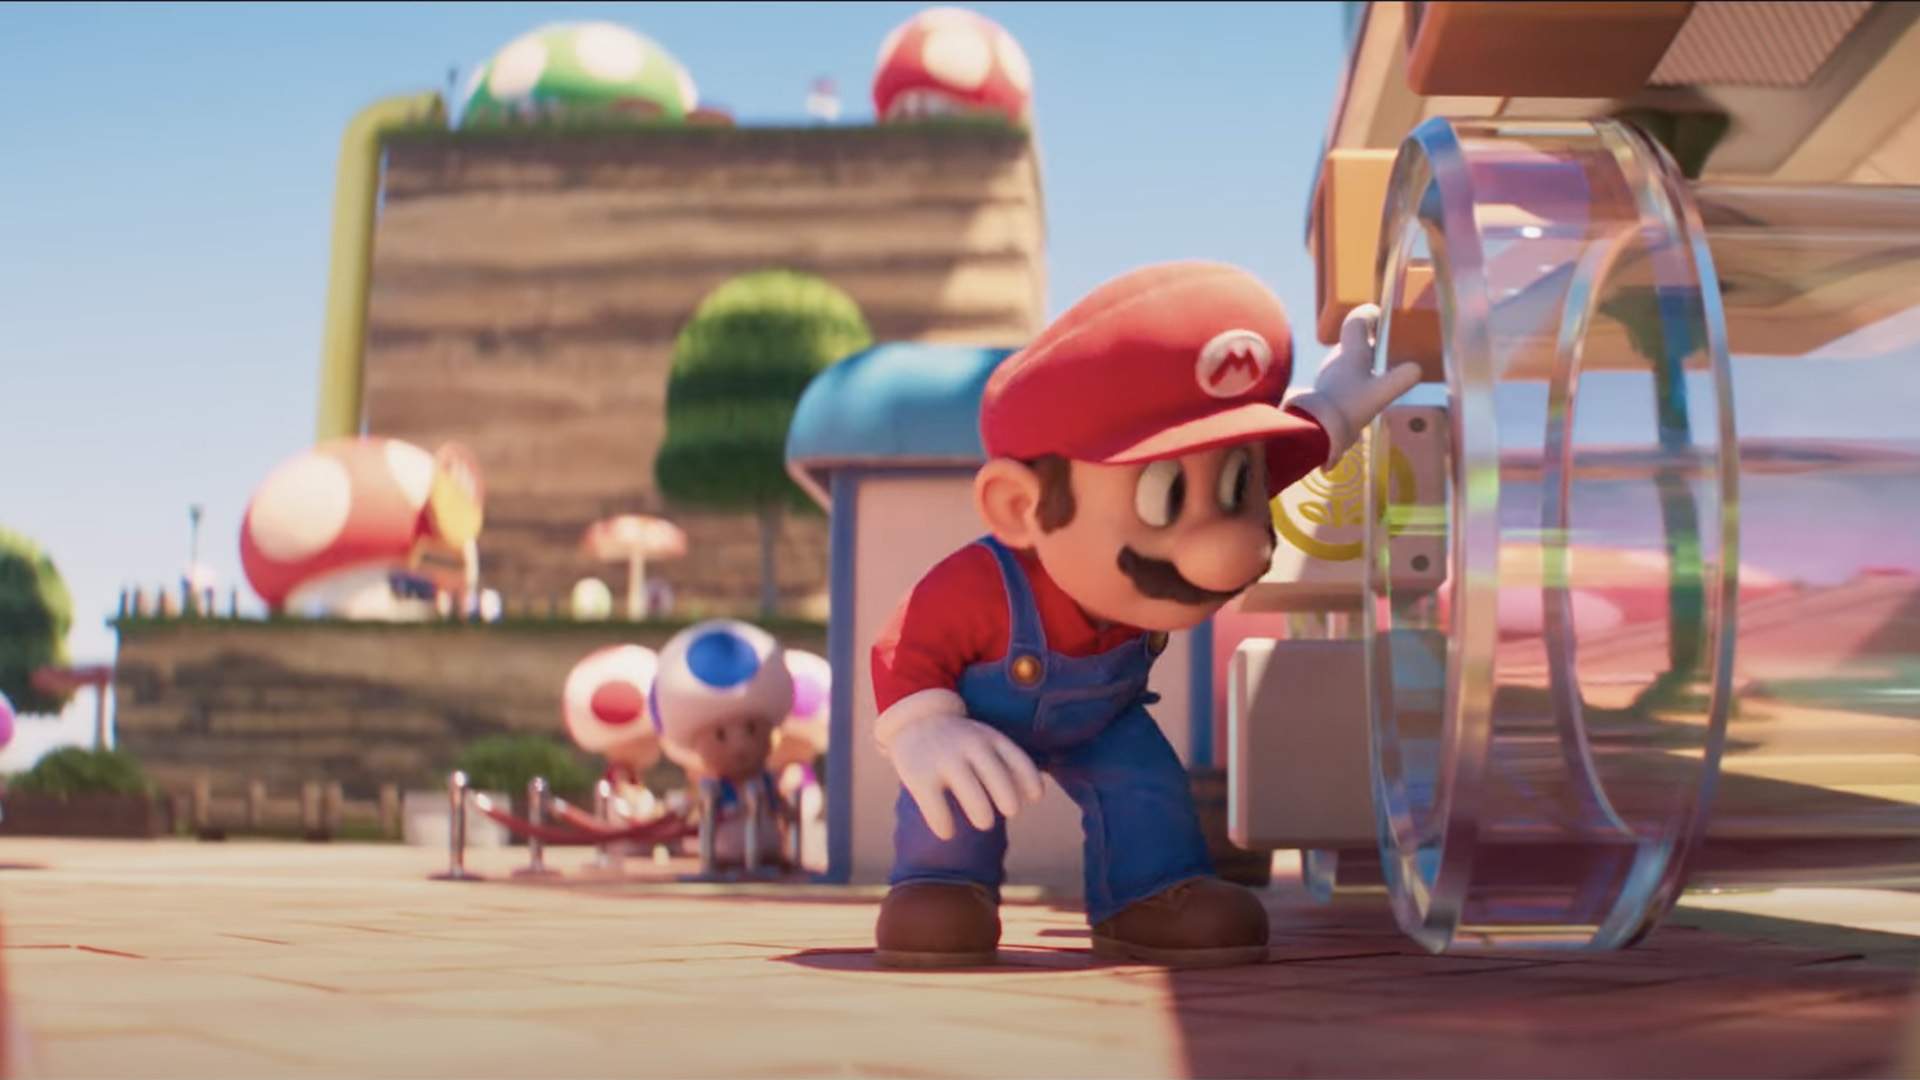 Let’s Go: последний краткий обзор фильма Super Mario Bros. — мечта Супер Марио в Грибном королевстве